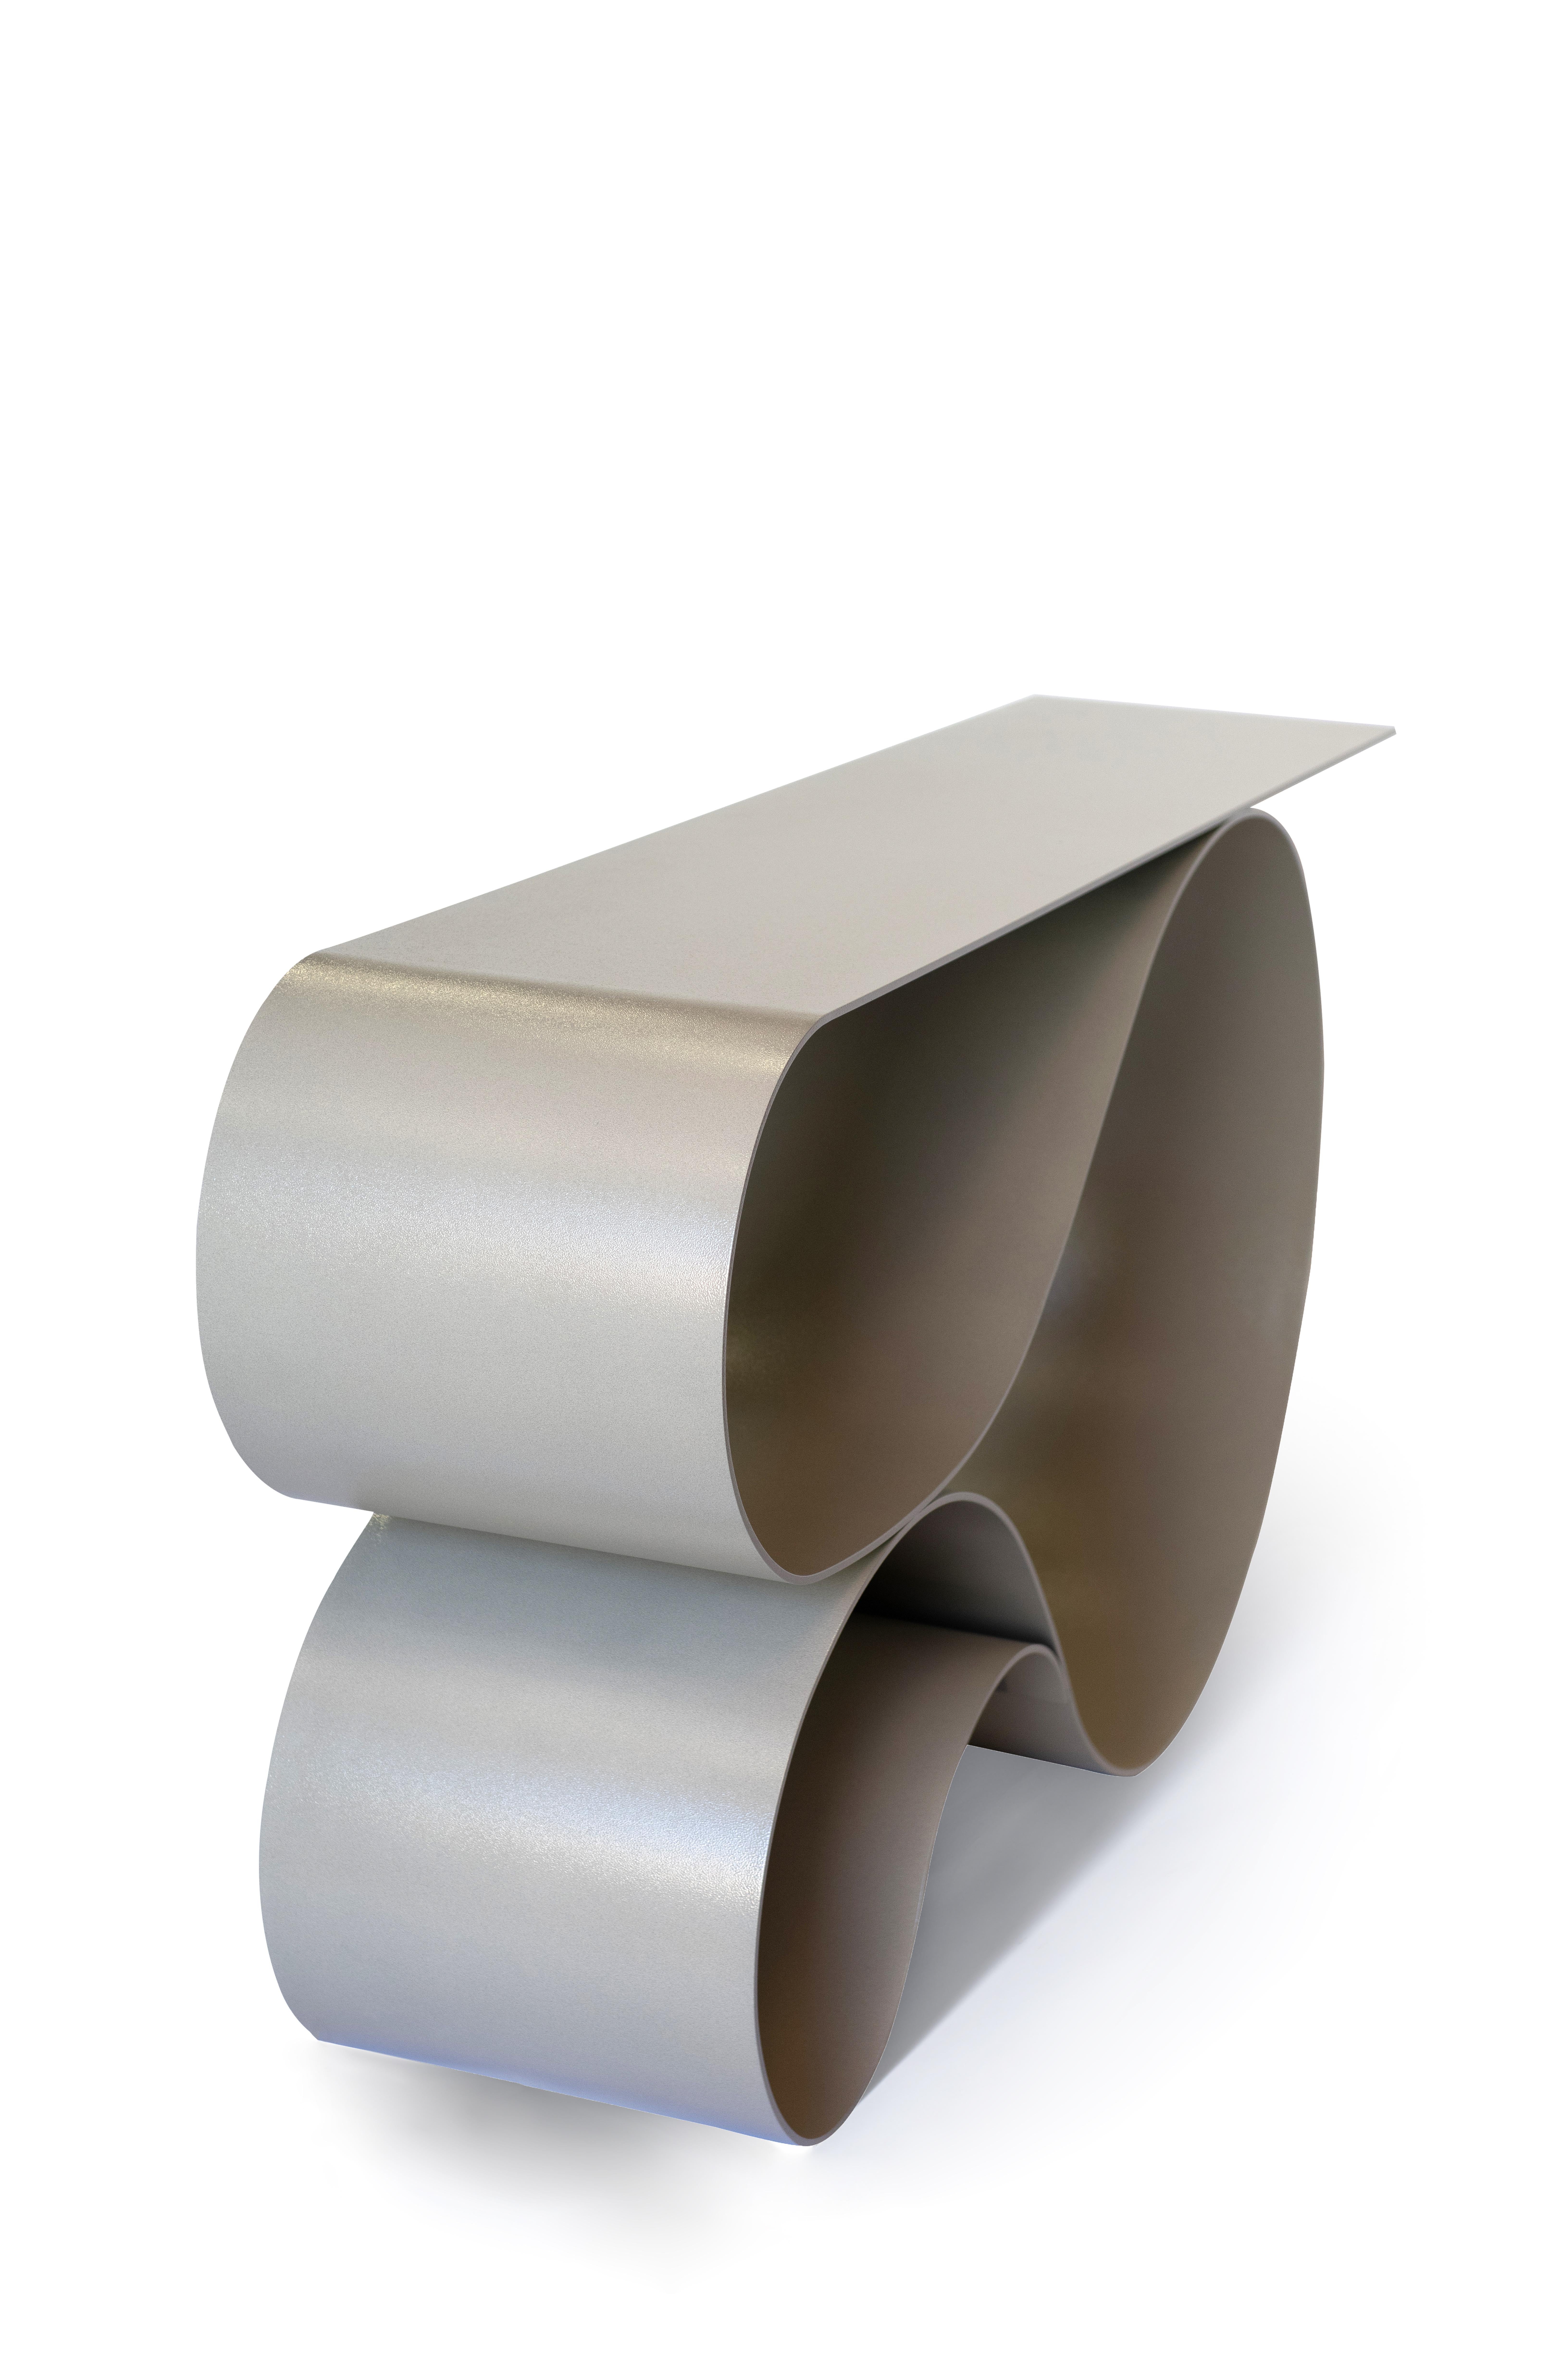 La forme lyrique emblématique de la série primée de tables Whorl est cette fois exécutée en aluminium à revêtement en poudre. l'aluminium de 1/4